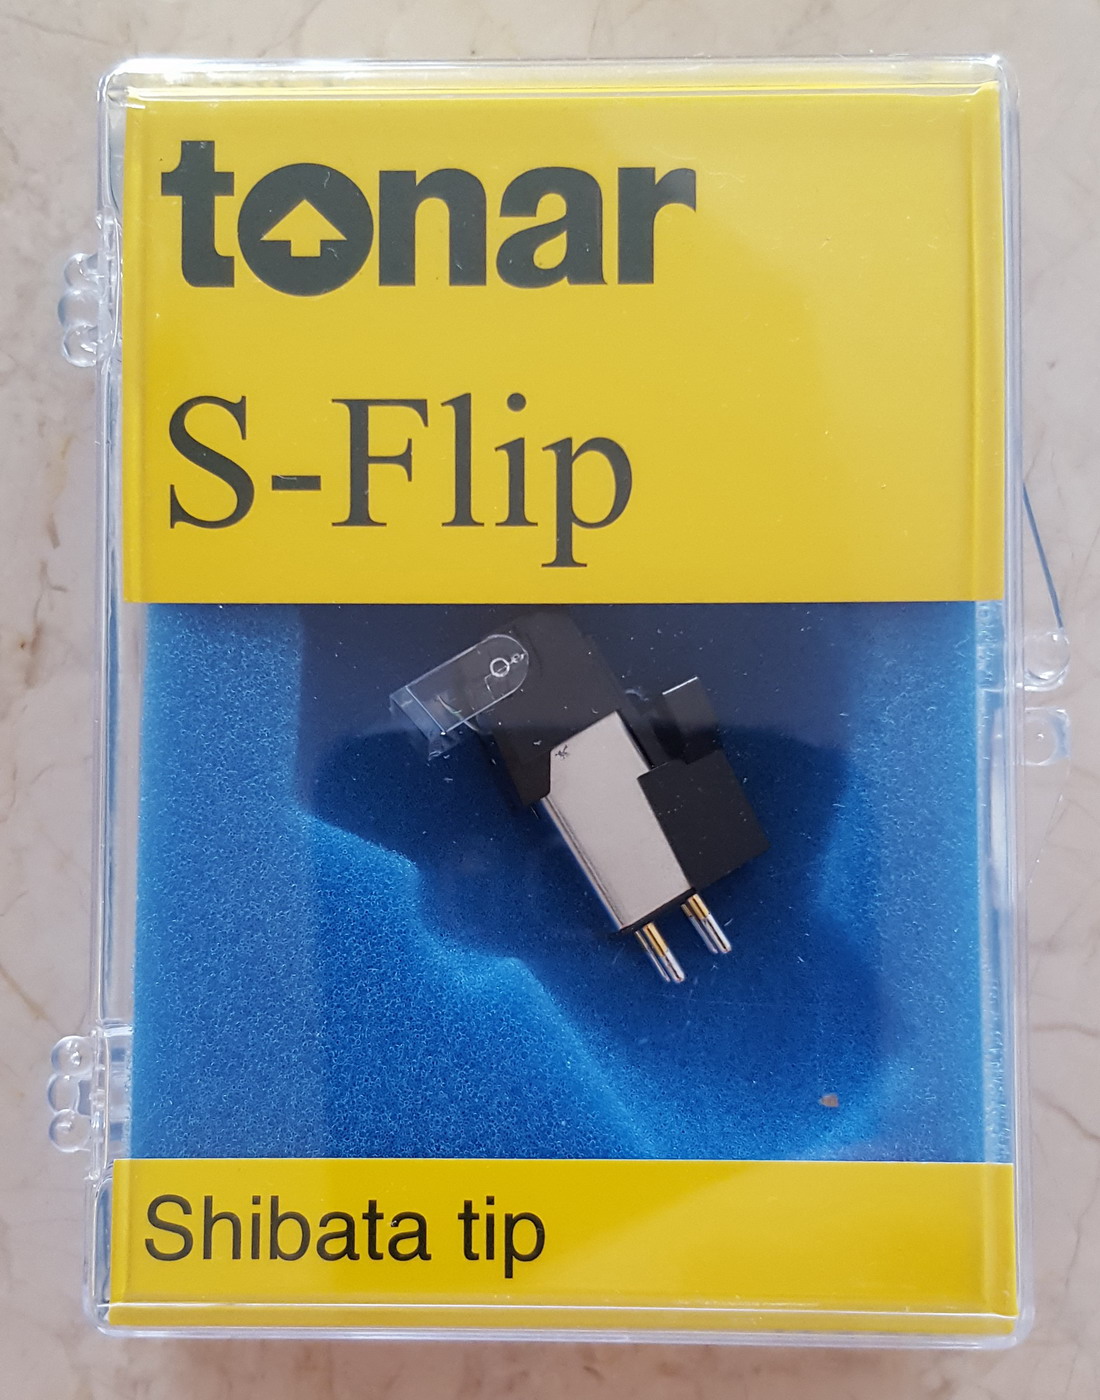     i,  : TONAR S-Flip (Shibata tip), art. 9586